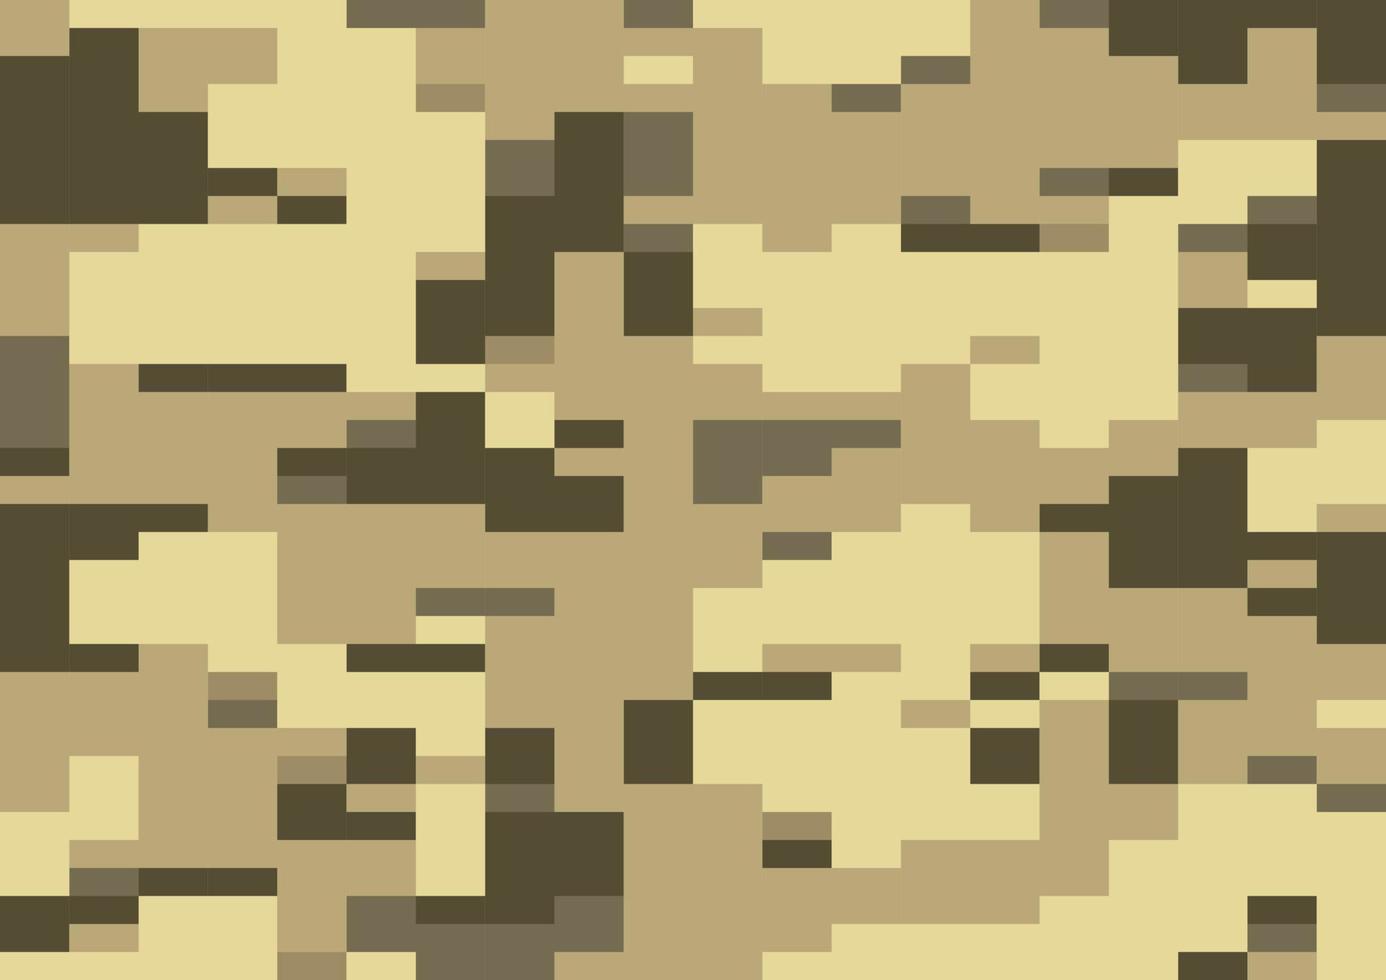 vetor de camo digi de areia do deserto, padrão sem emenda. camuflagem de pixel moderna multi-escala de 8 bits em tons de amarelo claro, sépia e marrom. projeto digico.